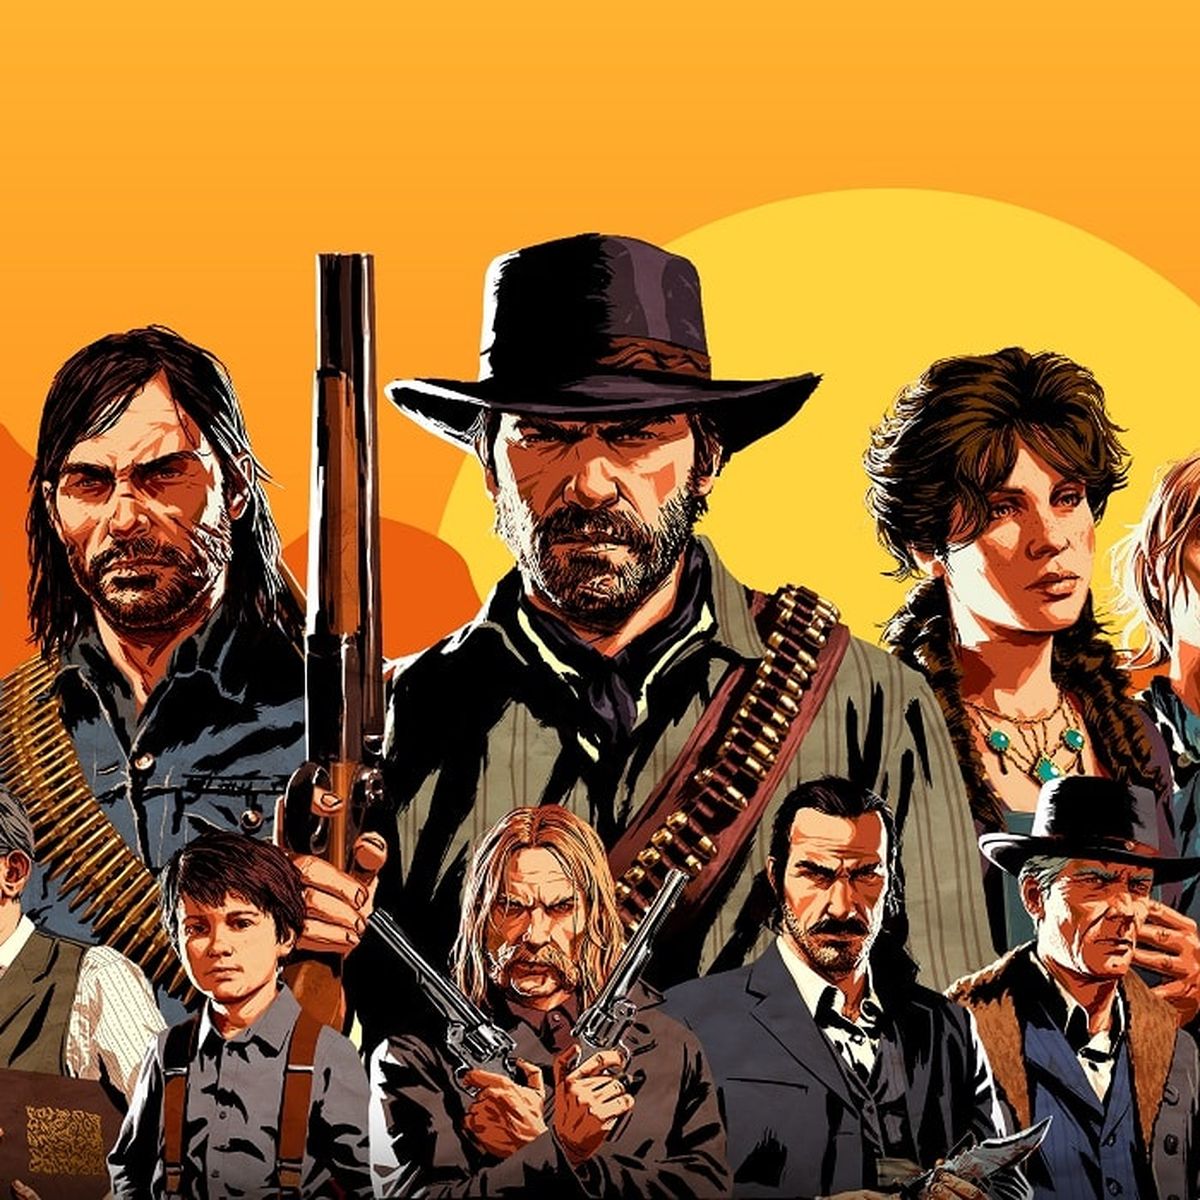 Los mejores detallazos de Red Dead Redemption que puedes buscar